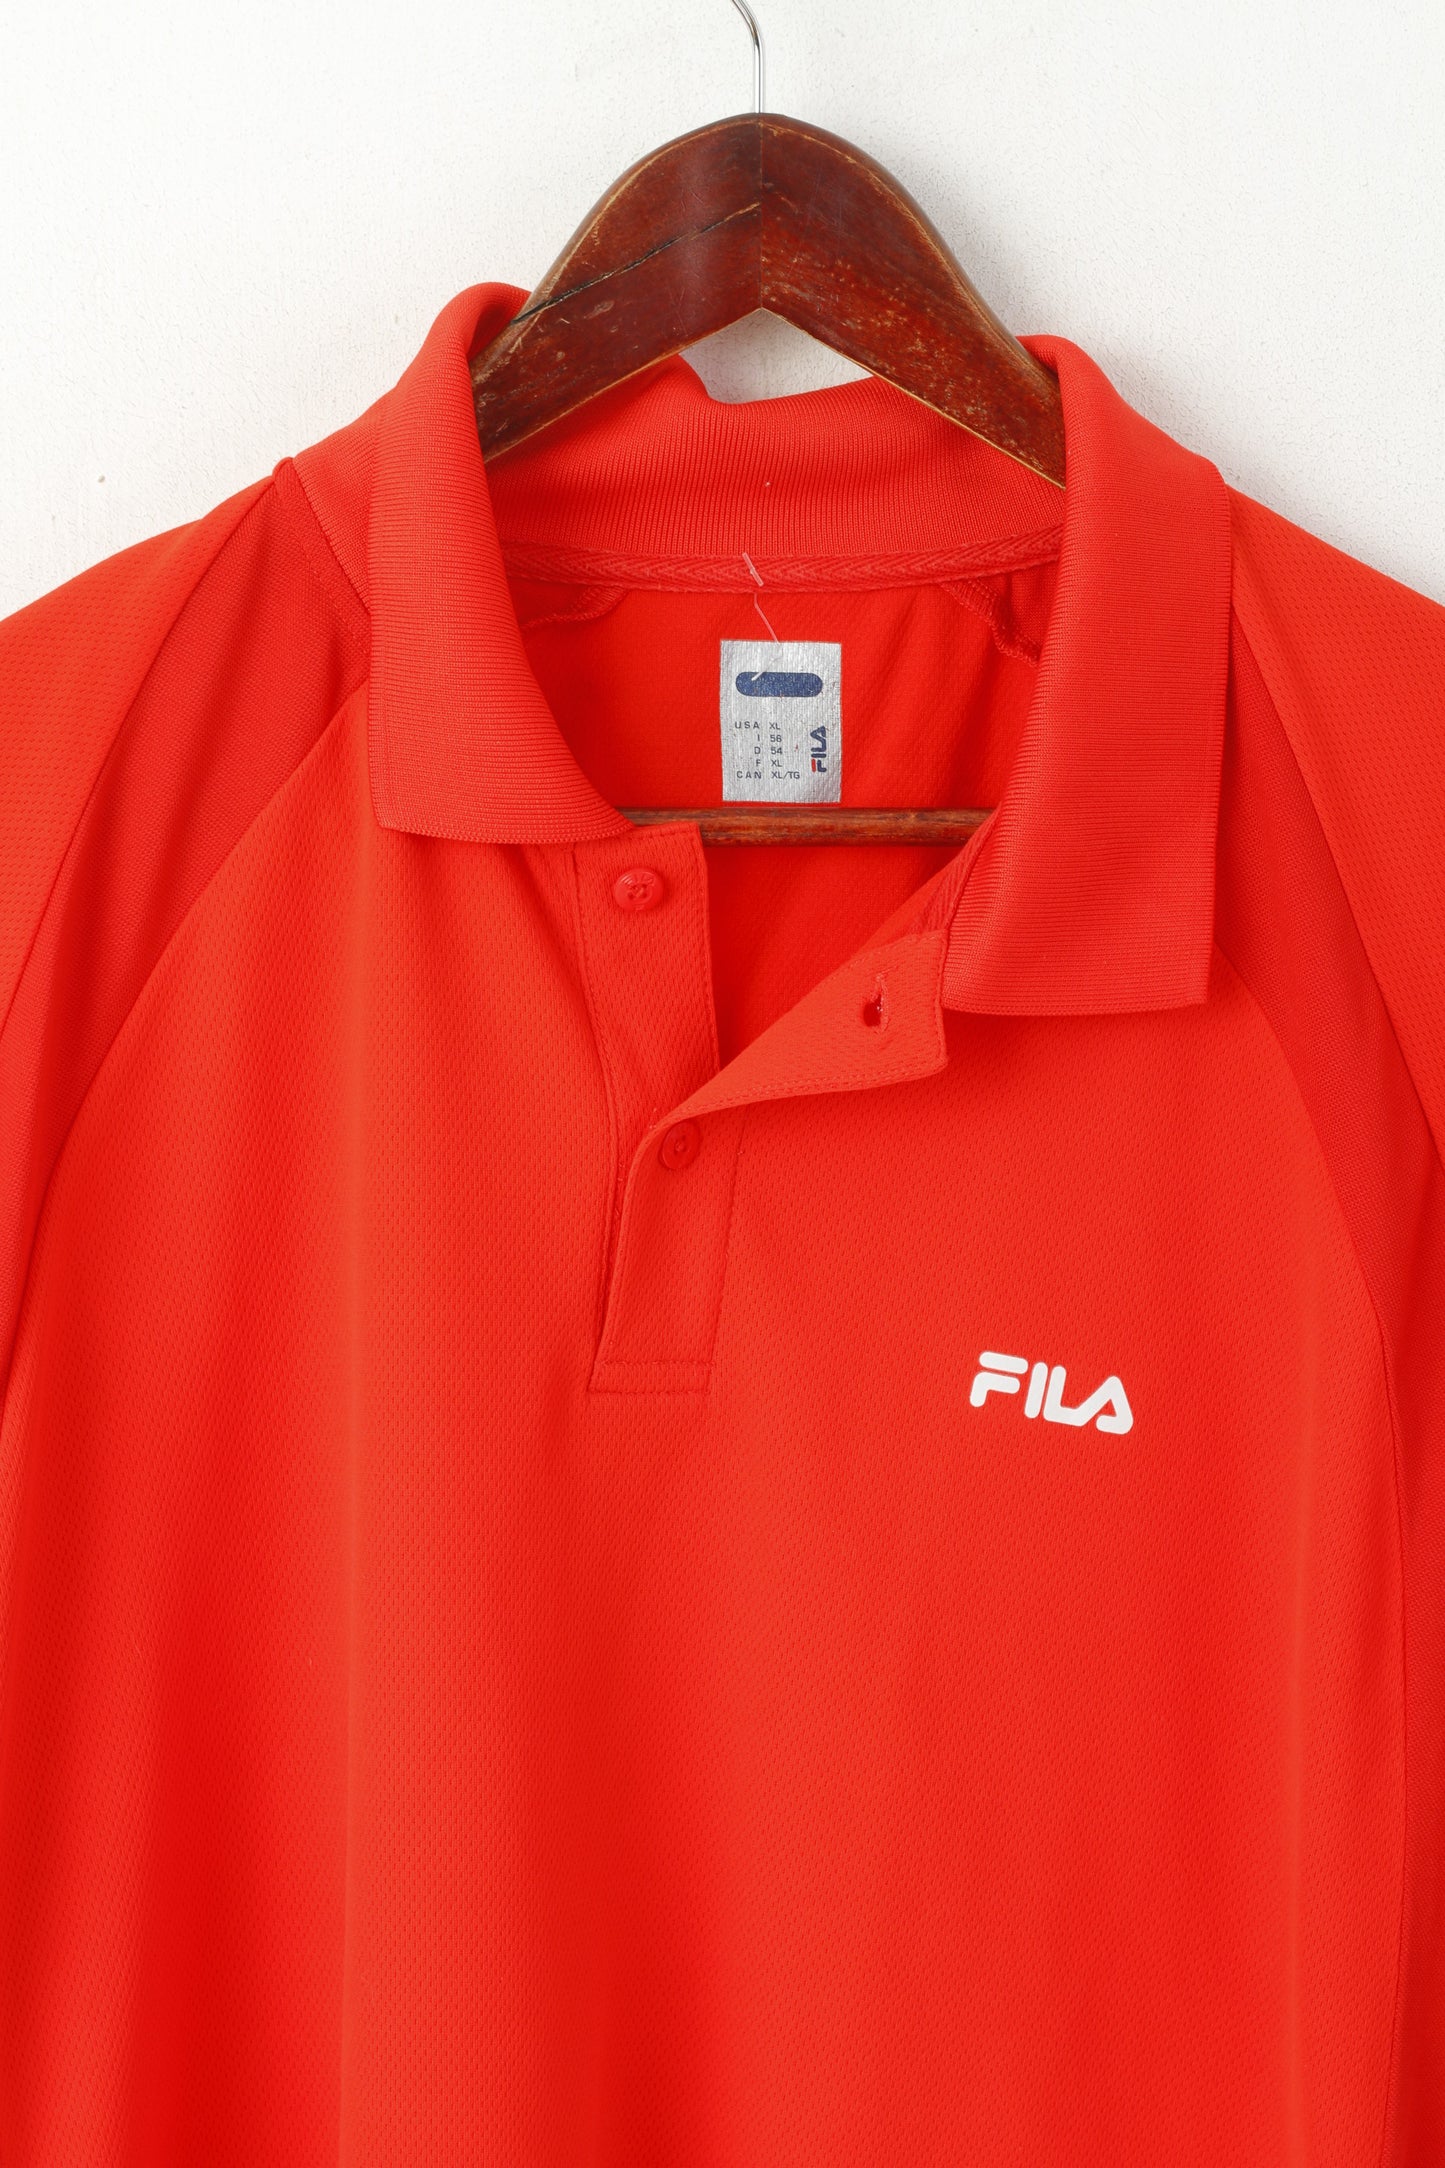 Fila Men XL Polo Shirt Neon Red Shiny Vintage Sportswear Logo Sport Top